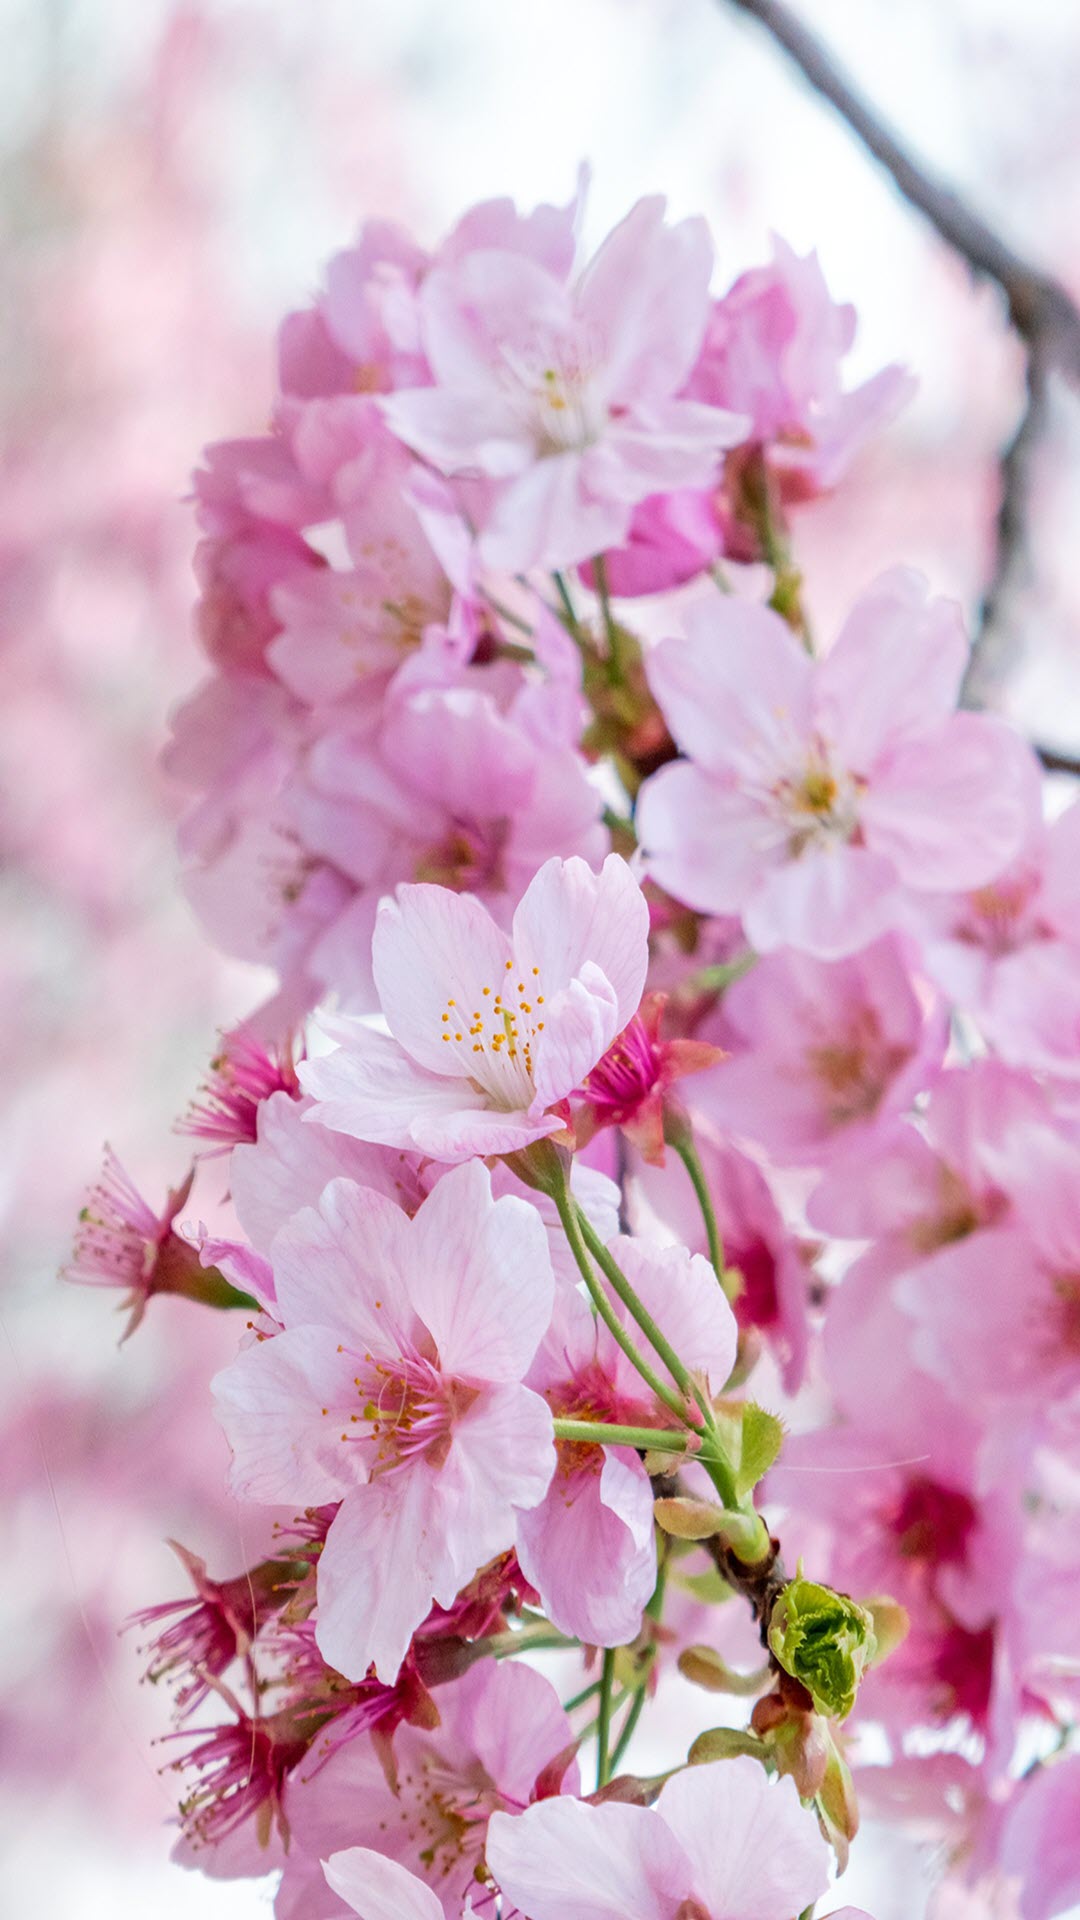 Báo hiệu xuân đã về với hình ảnh những đóa hoa anh đào hồng trong sắc xuân tươi trẻ. Hãy cùng chiêm ngưỡng những bức ảnh tuyệt đẹp này để cảm nhận rõ ràng hơn nét đẹp tràn đầy năng lượng của mùa xuân.